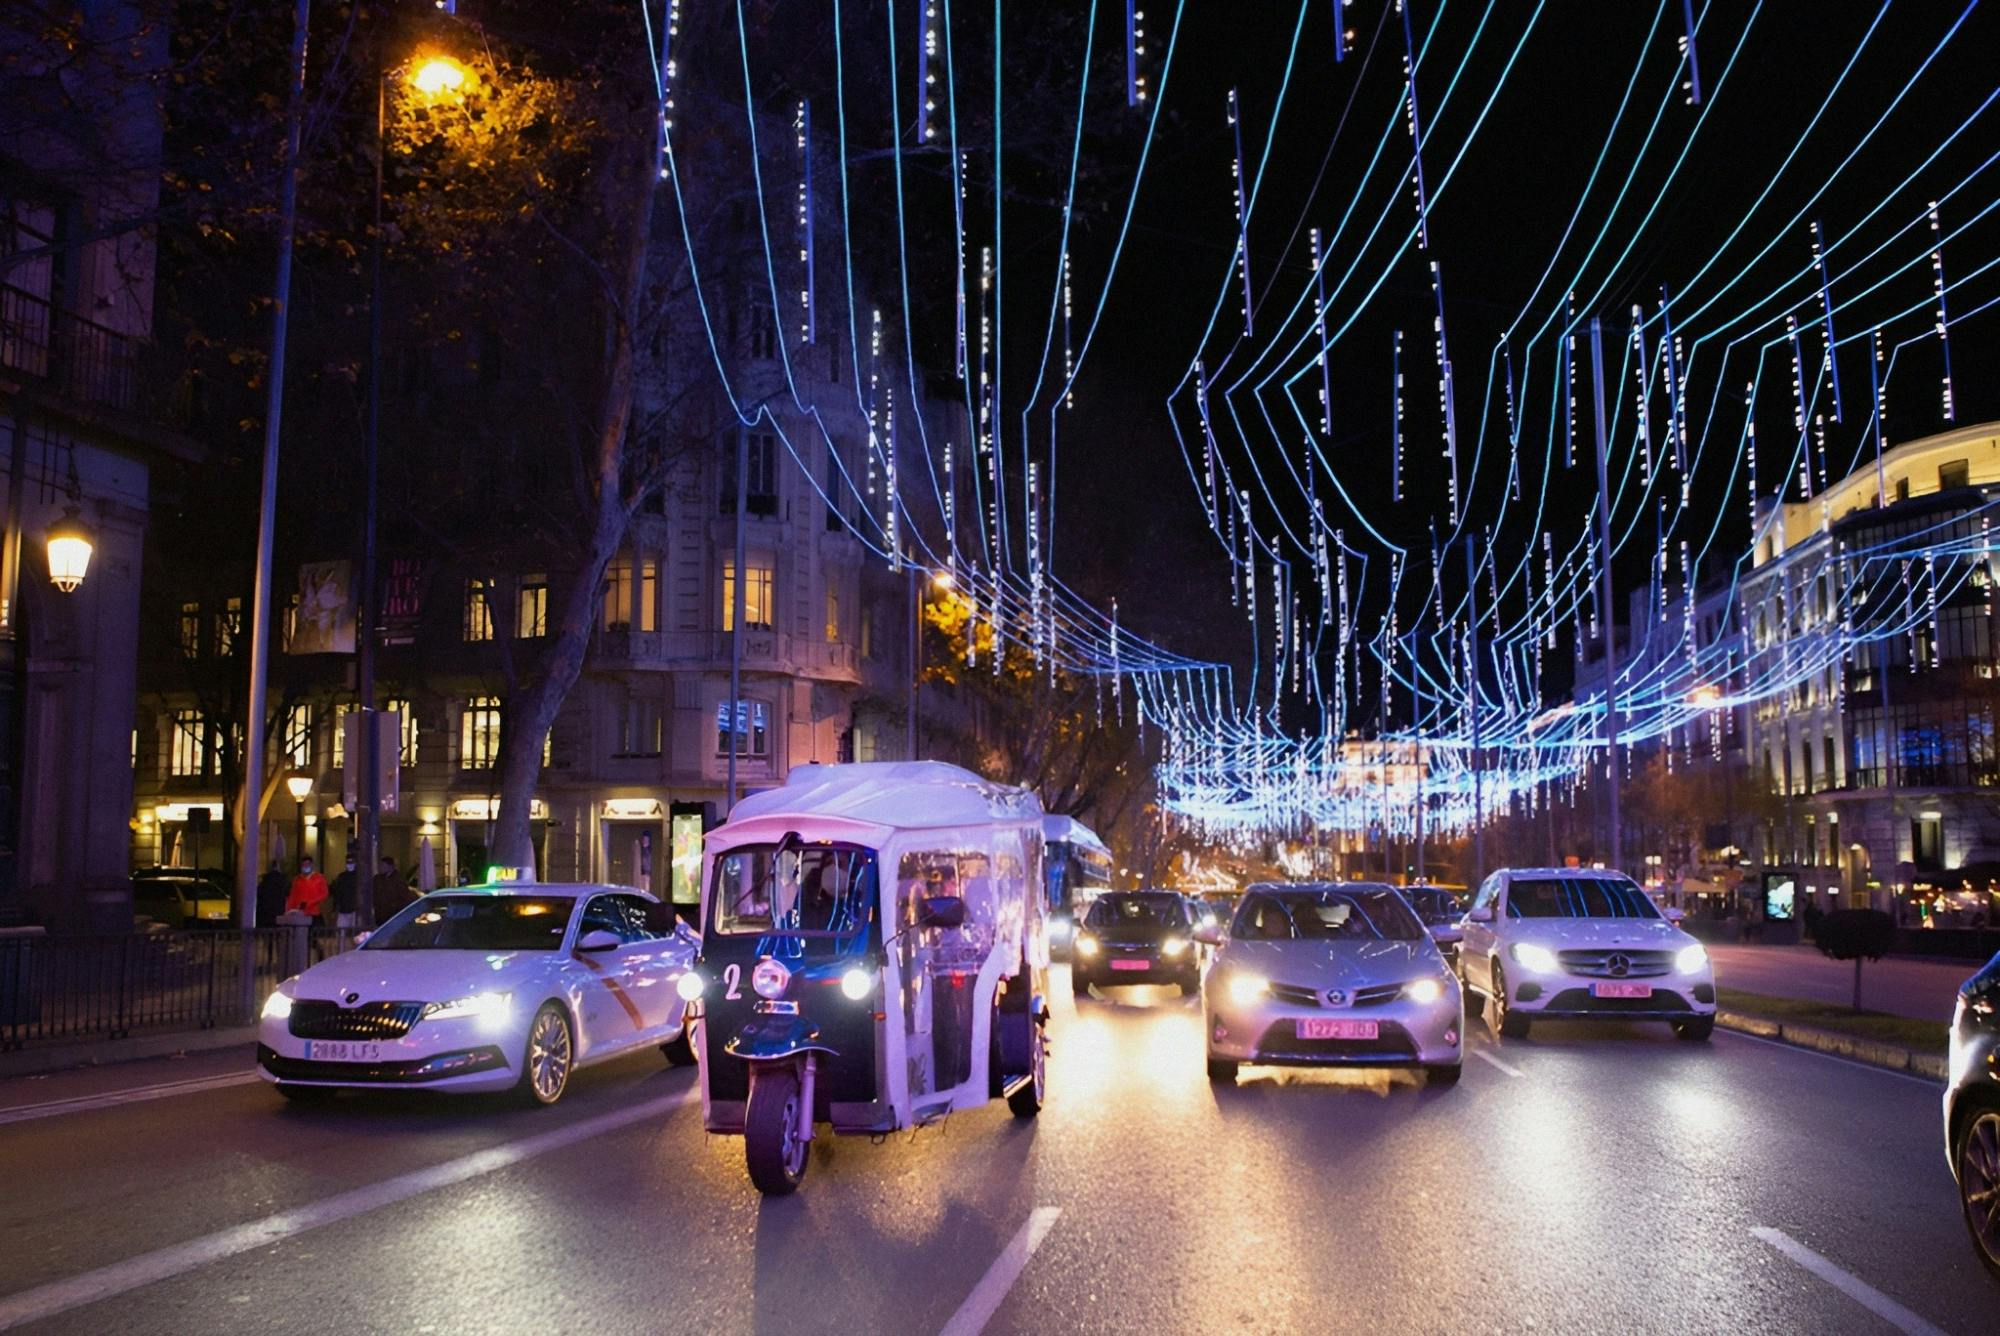 Visite des lumières de Noël de Madrid en Eco Tuk Tuk privé